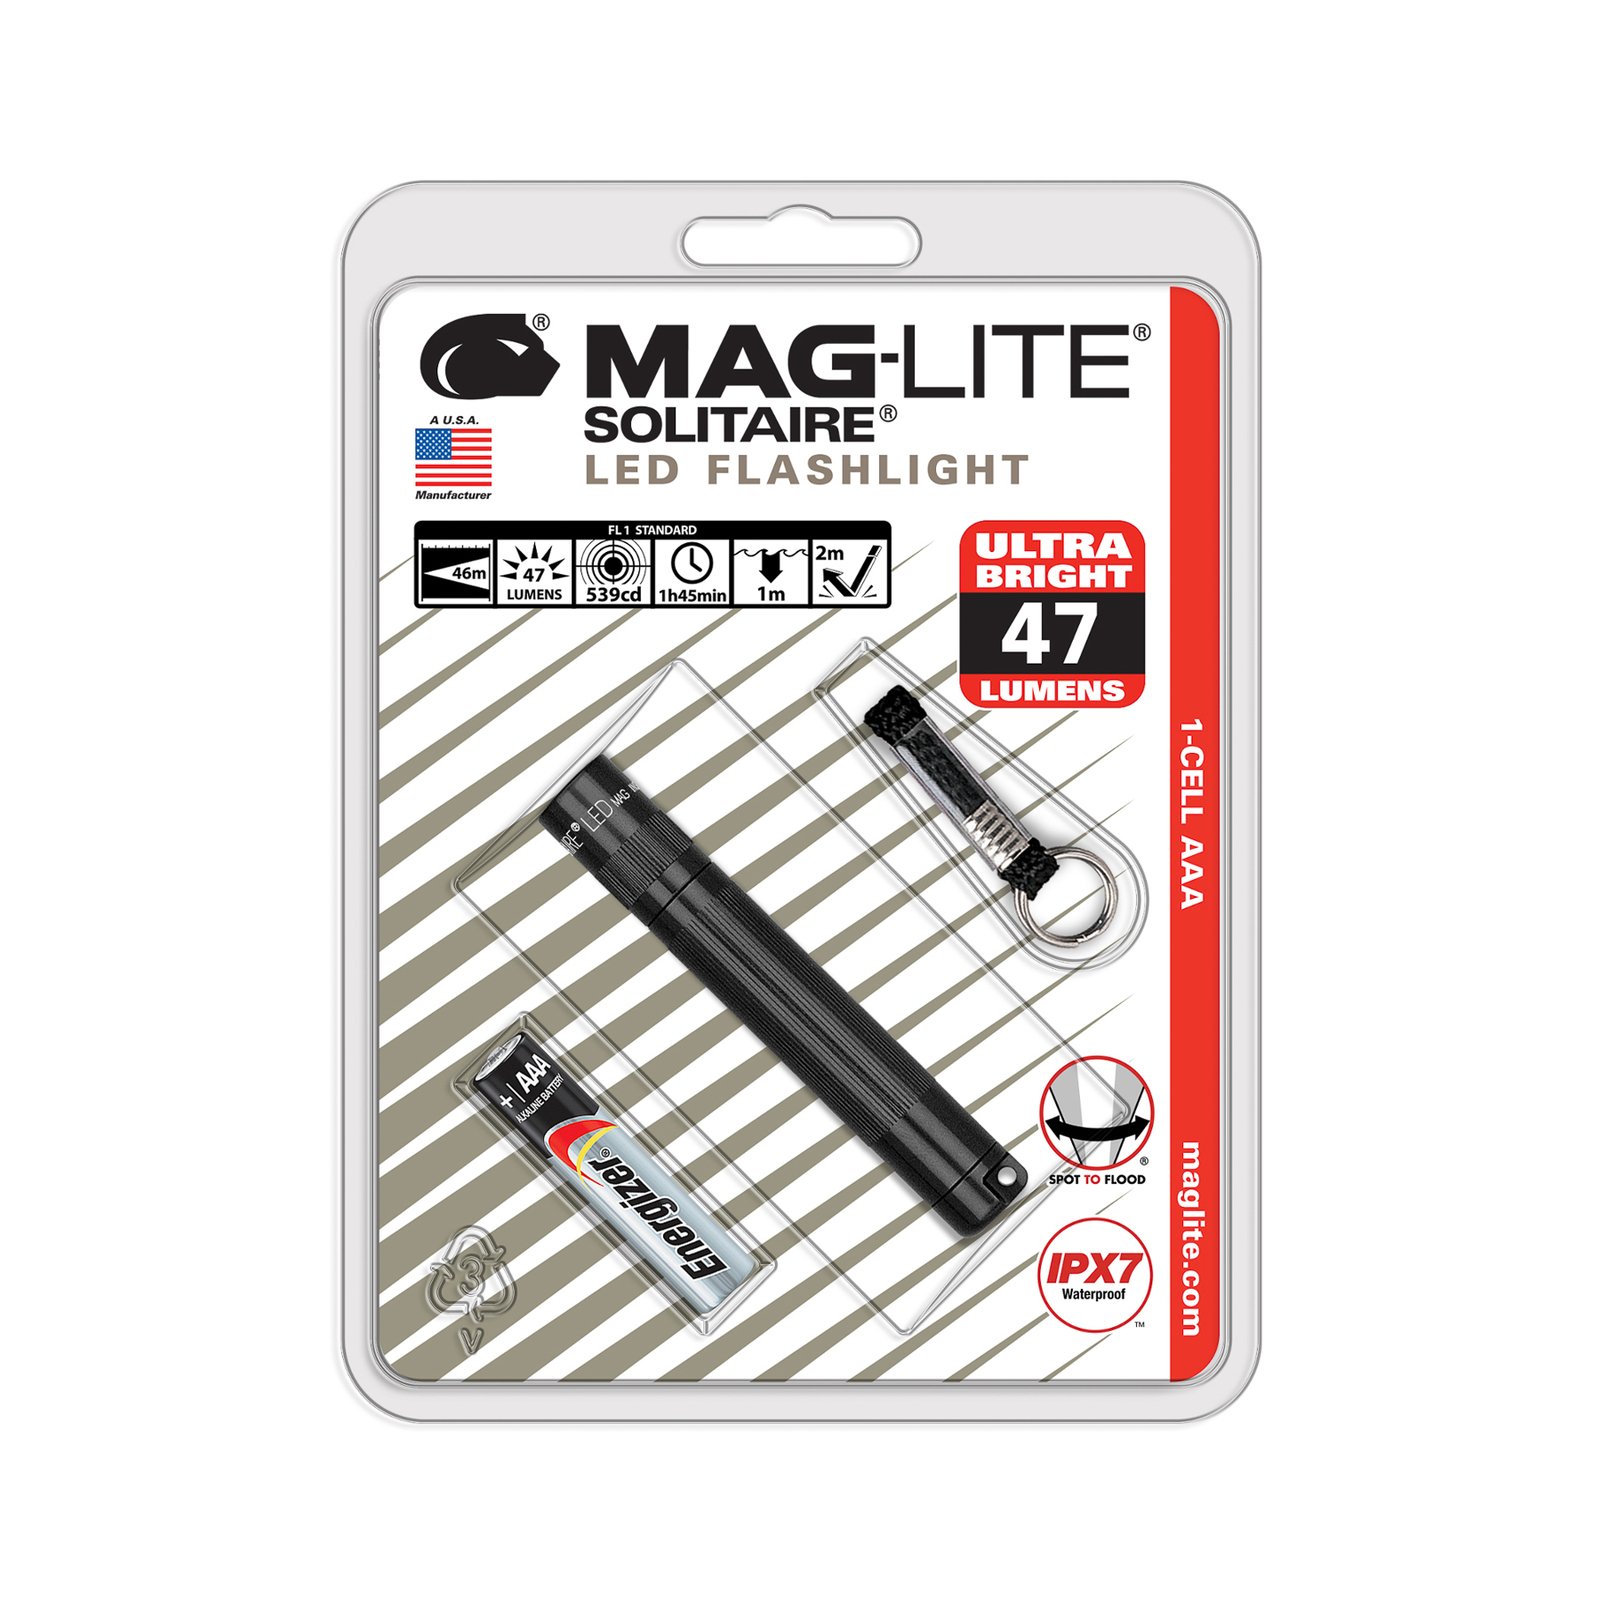 Svítilna Maglite LED Solitaire, 1 článek AAA, černá